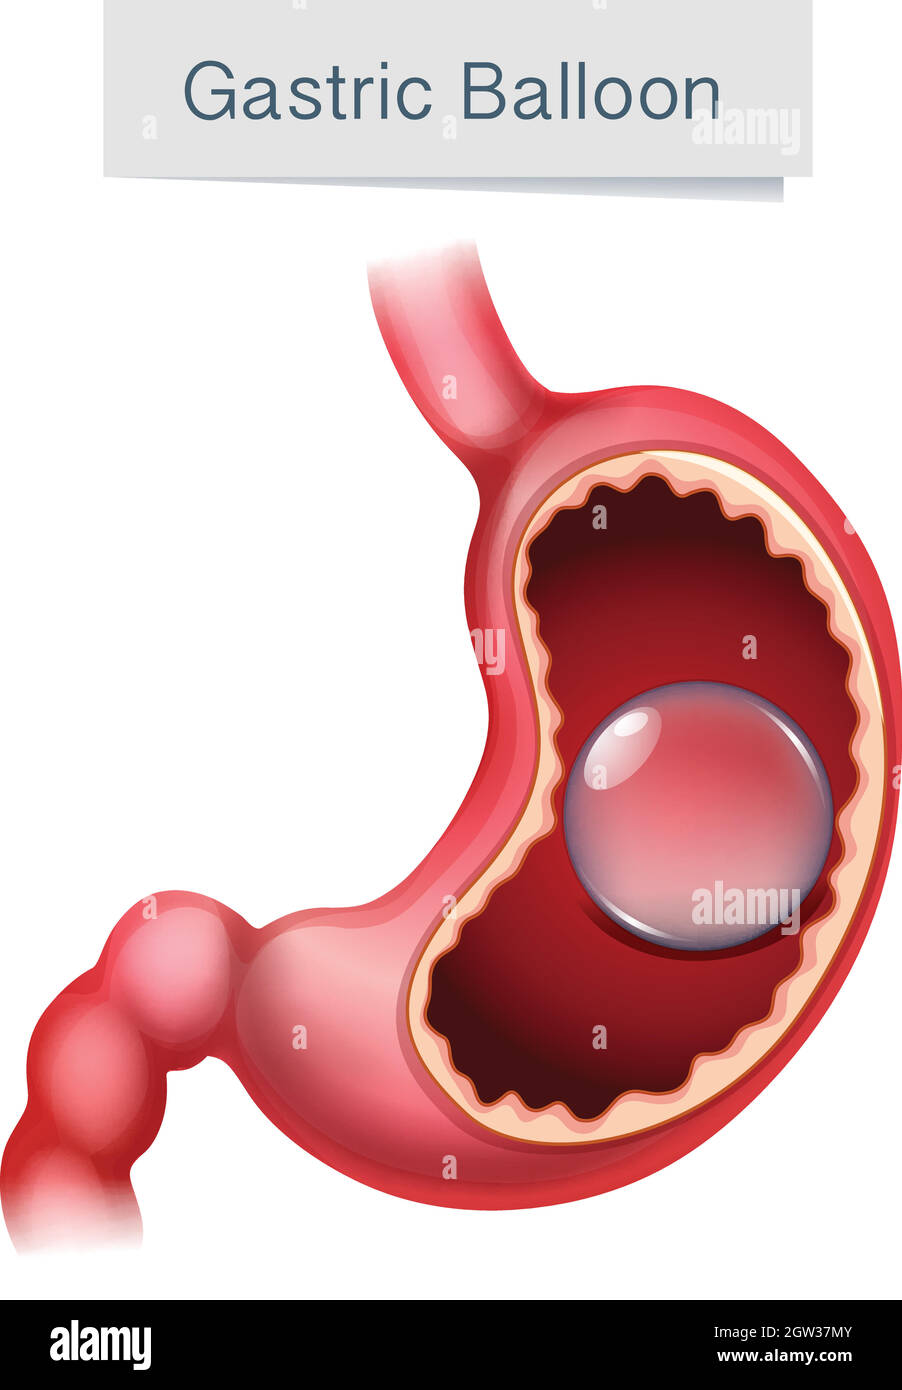 Human Anatomy Gastric Balloon Illustration Stock Vector